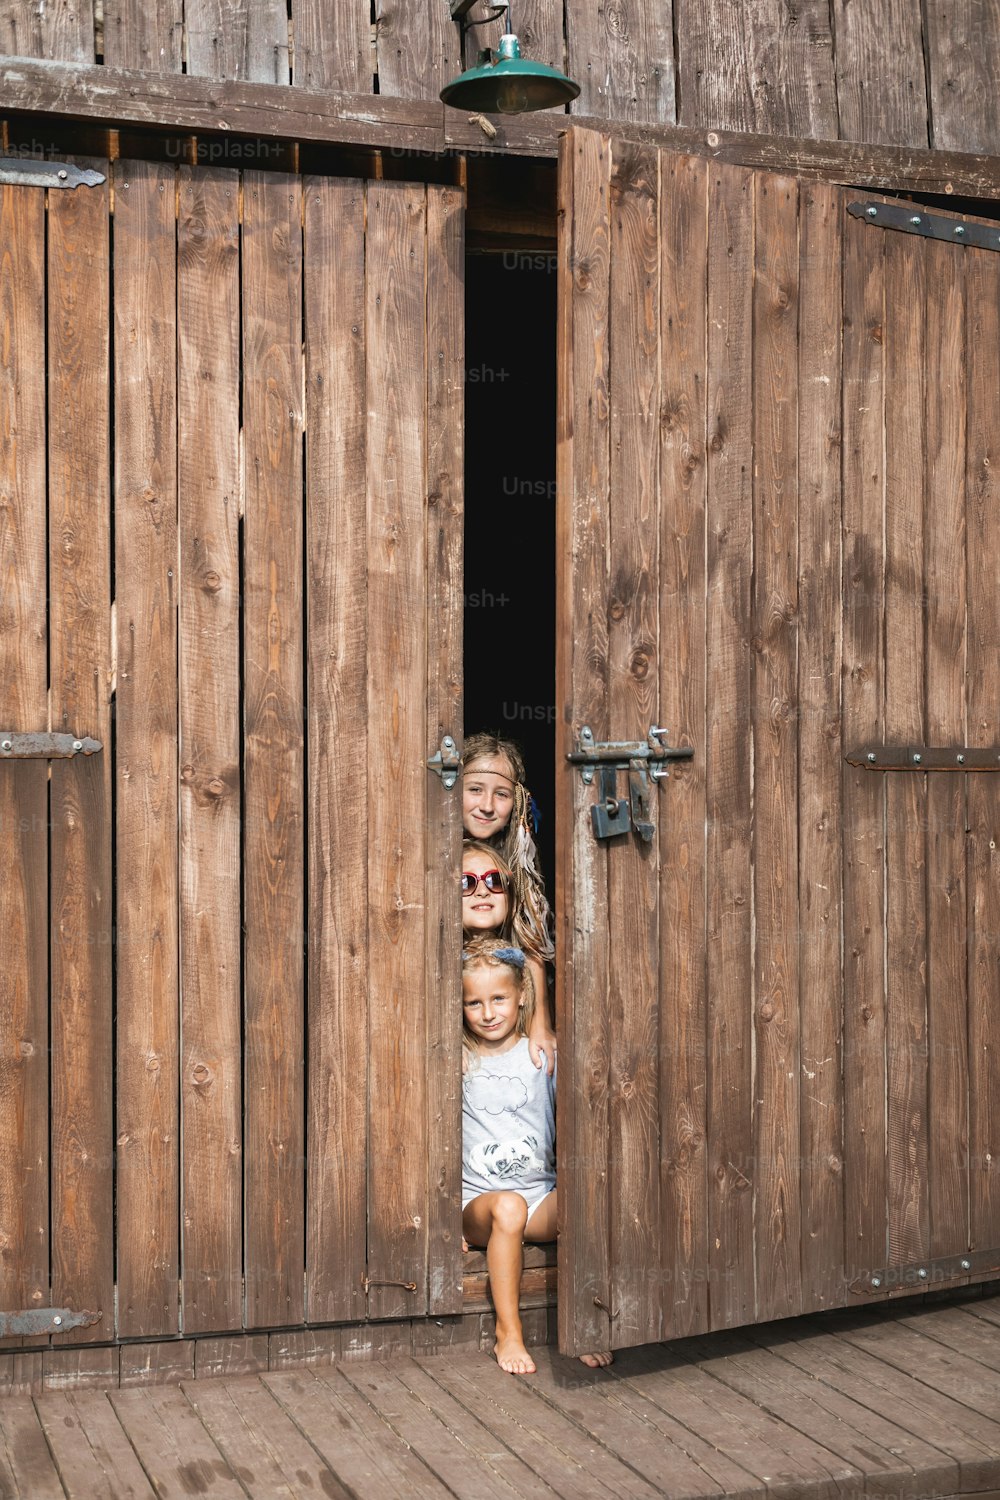 Piccole tre ragazze di campagna che indossano abiti boho casual, sorridenti mentre sono sedute in una porta di legno del fienile in campagna o in fattoria, calda giornata estiva. Bambini che si divertono nel fienile di legno.